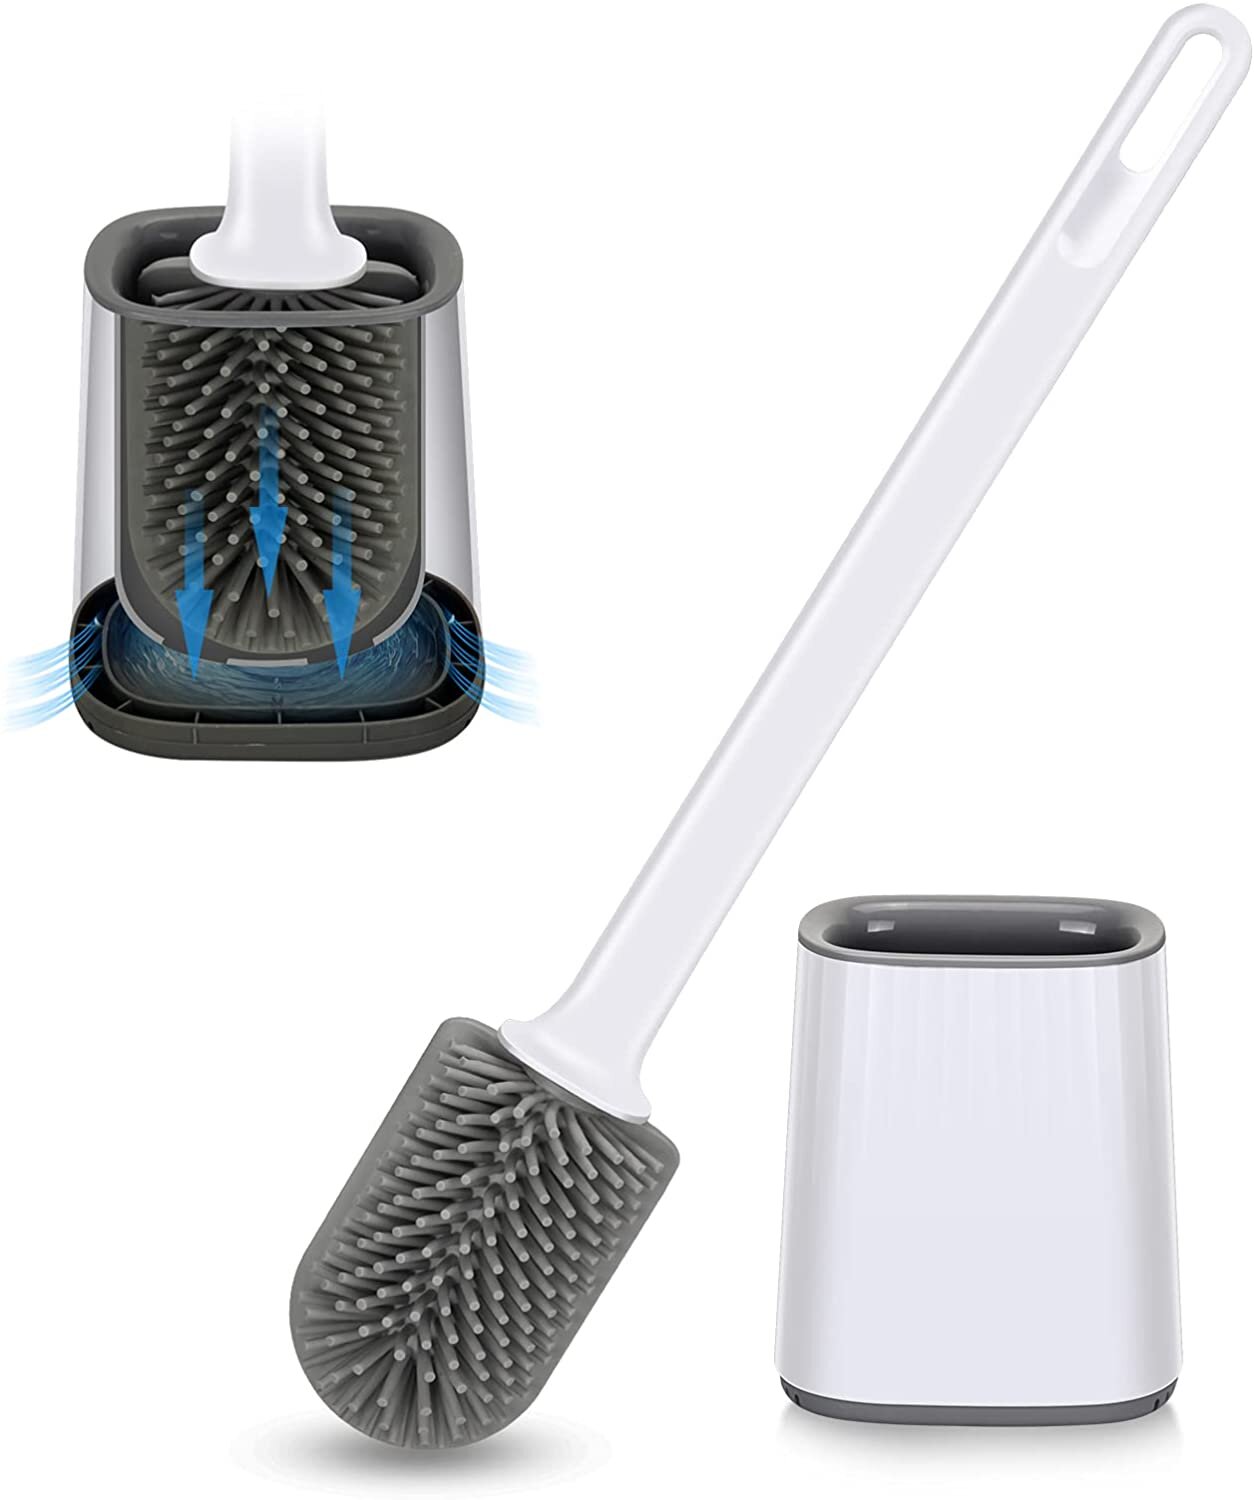 Toilet Bowl Cleaner Brush for Bathroom Toilet Brush and Holder Set 